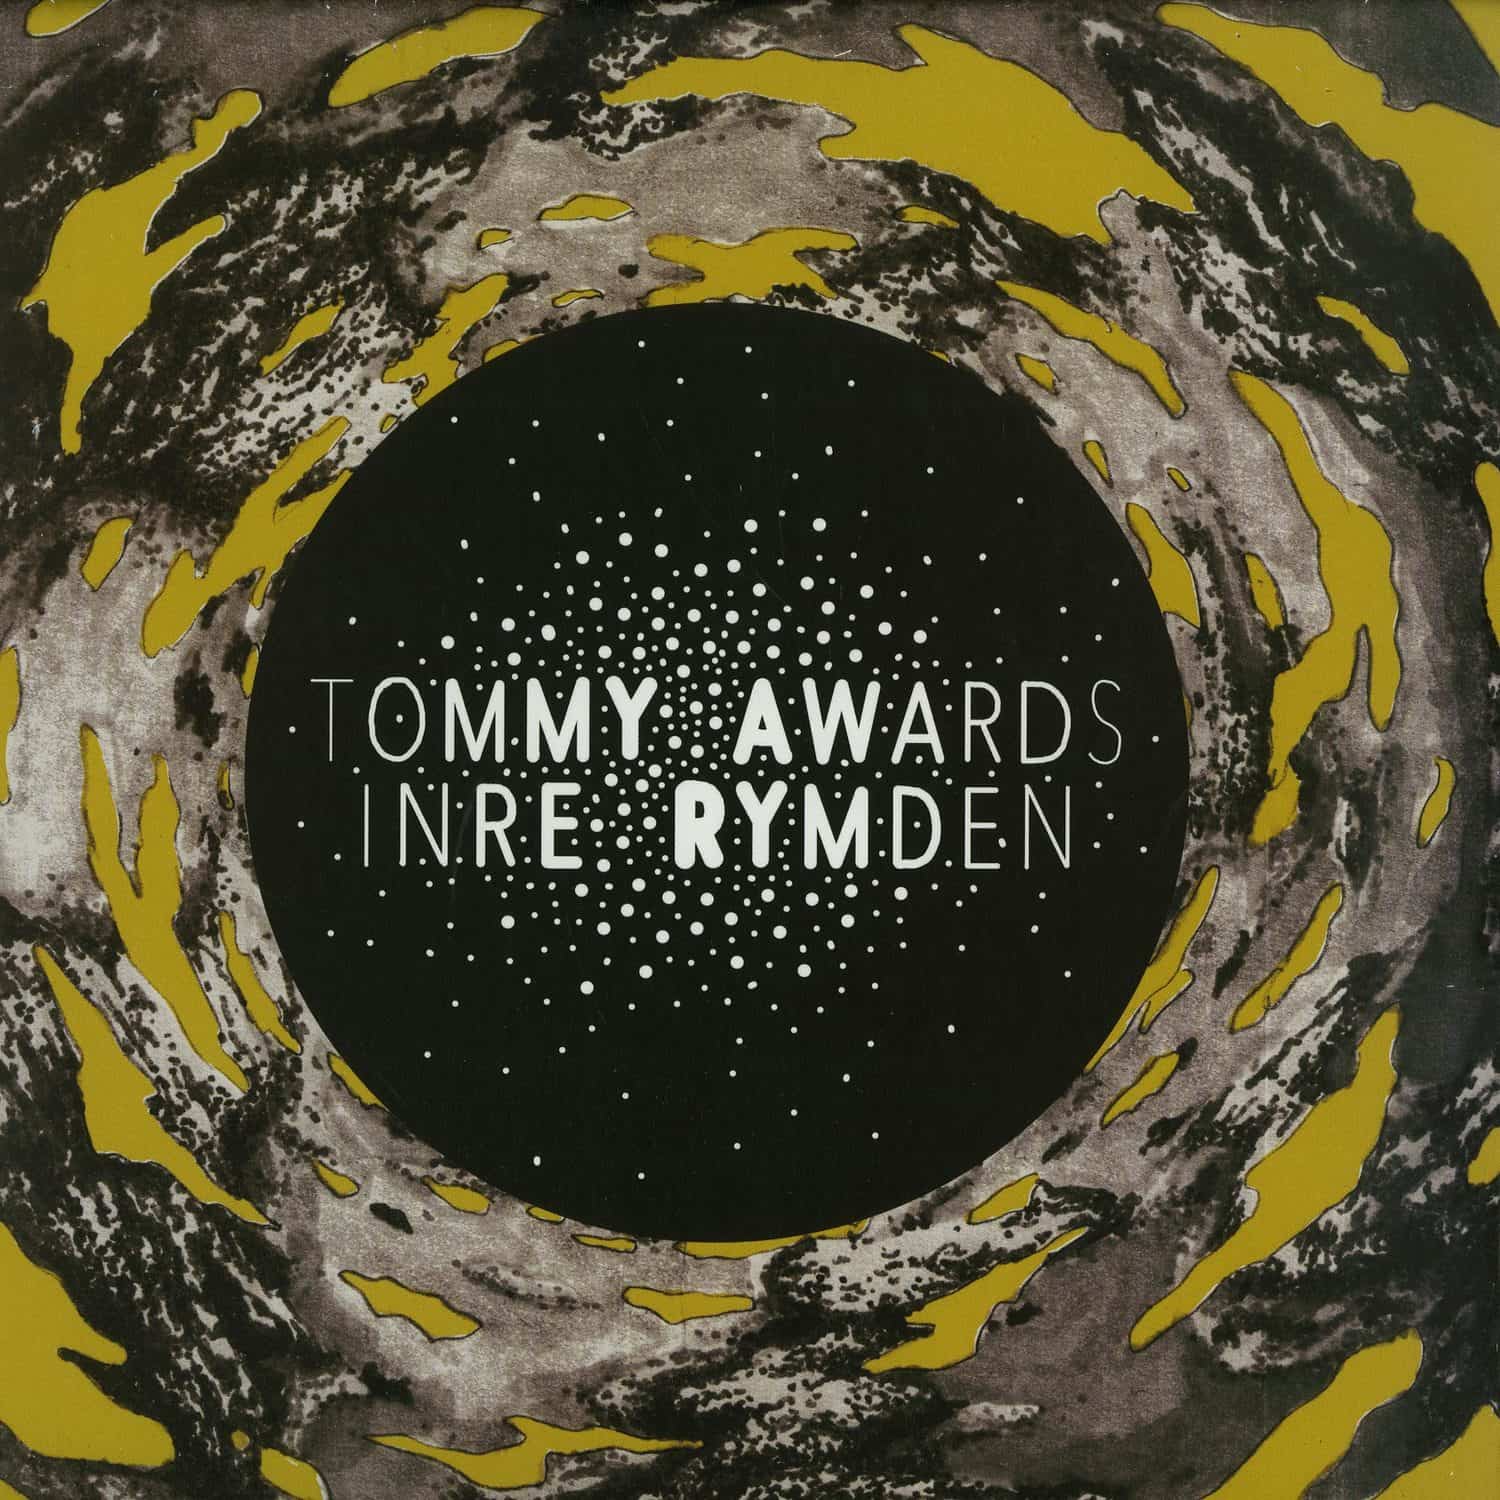 Tommy Awards - INRE RYMDEN